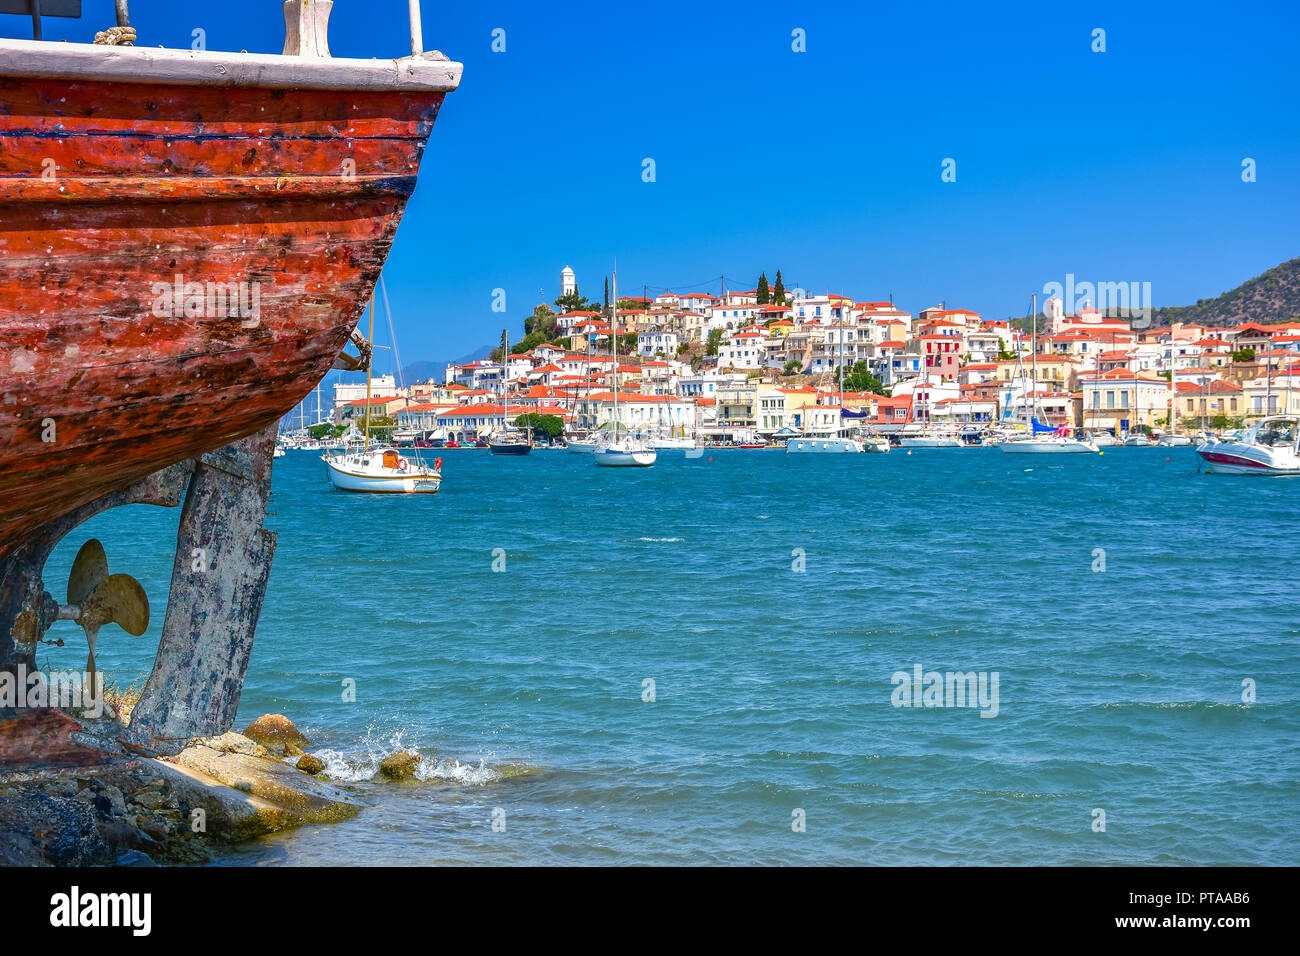 Famous Poros island, Peloponnese, Greece. Stock Photo